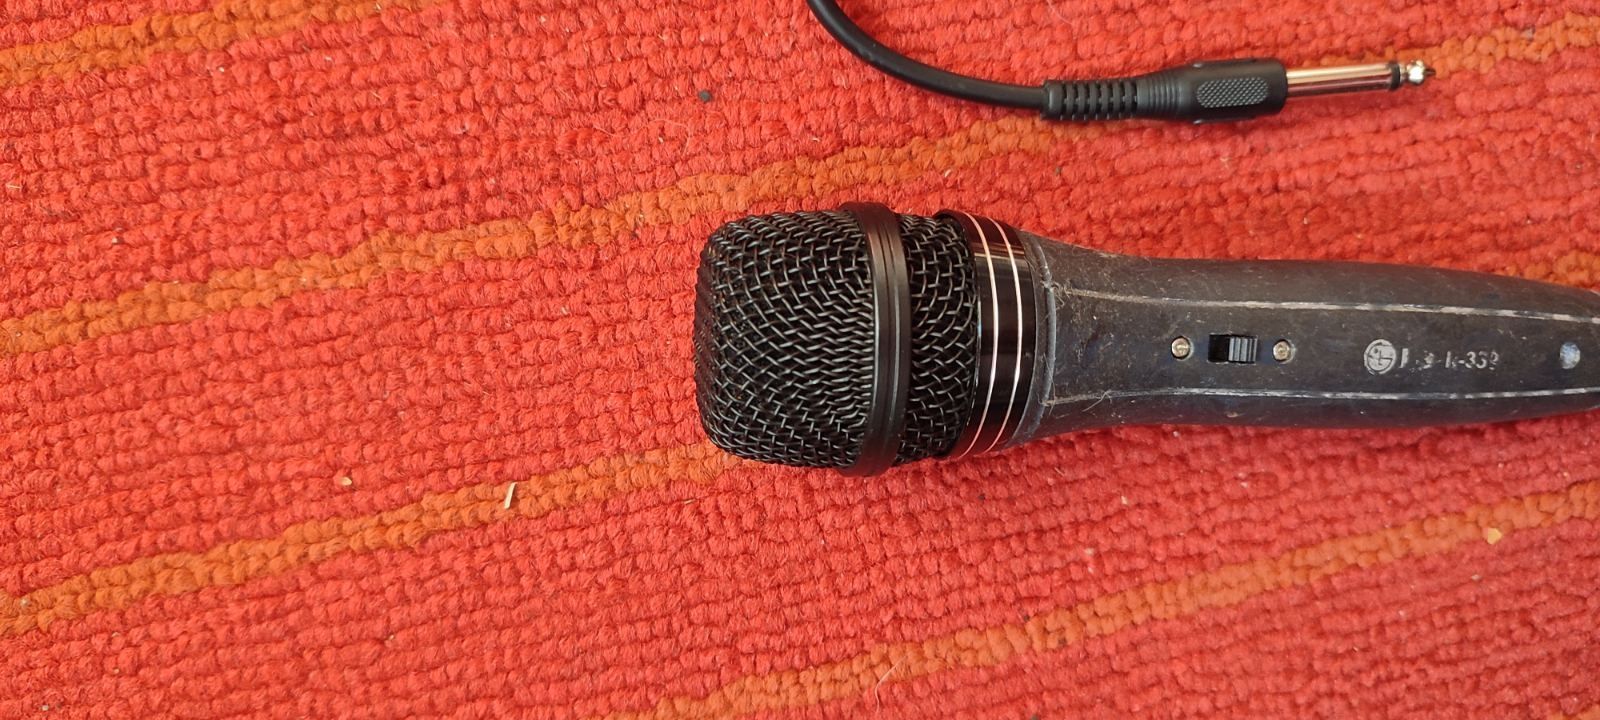 Продам микрофон LG